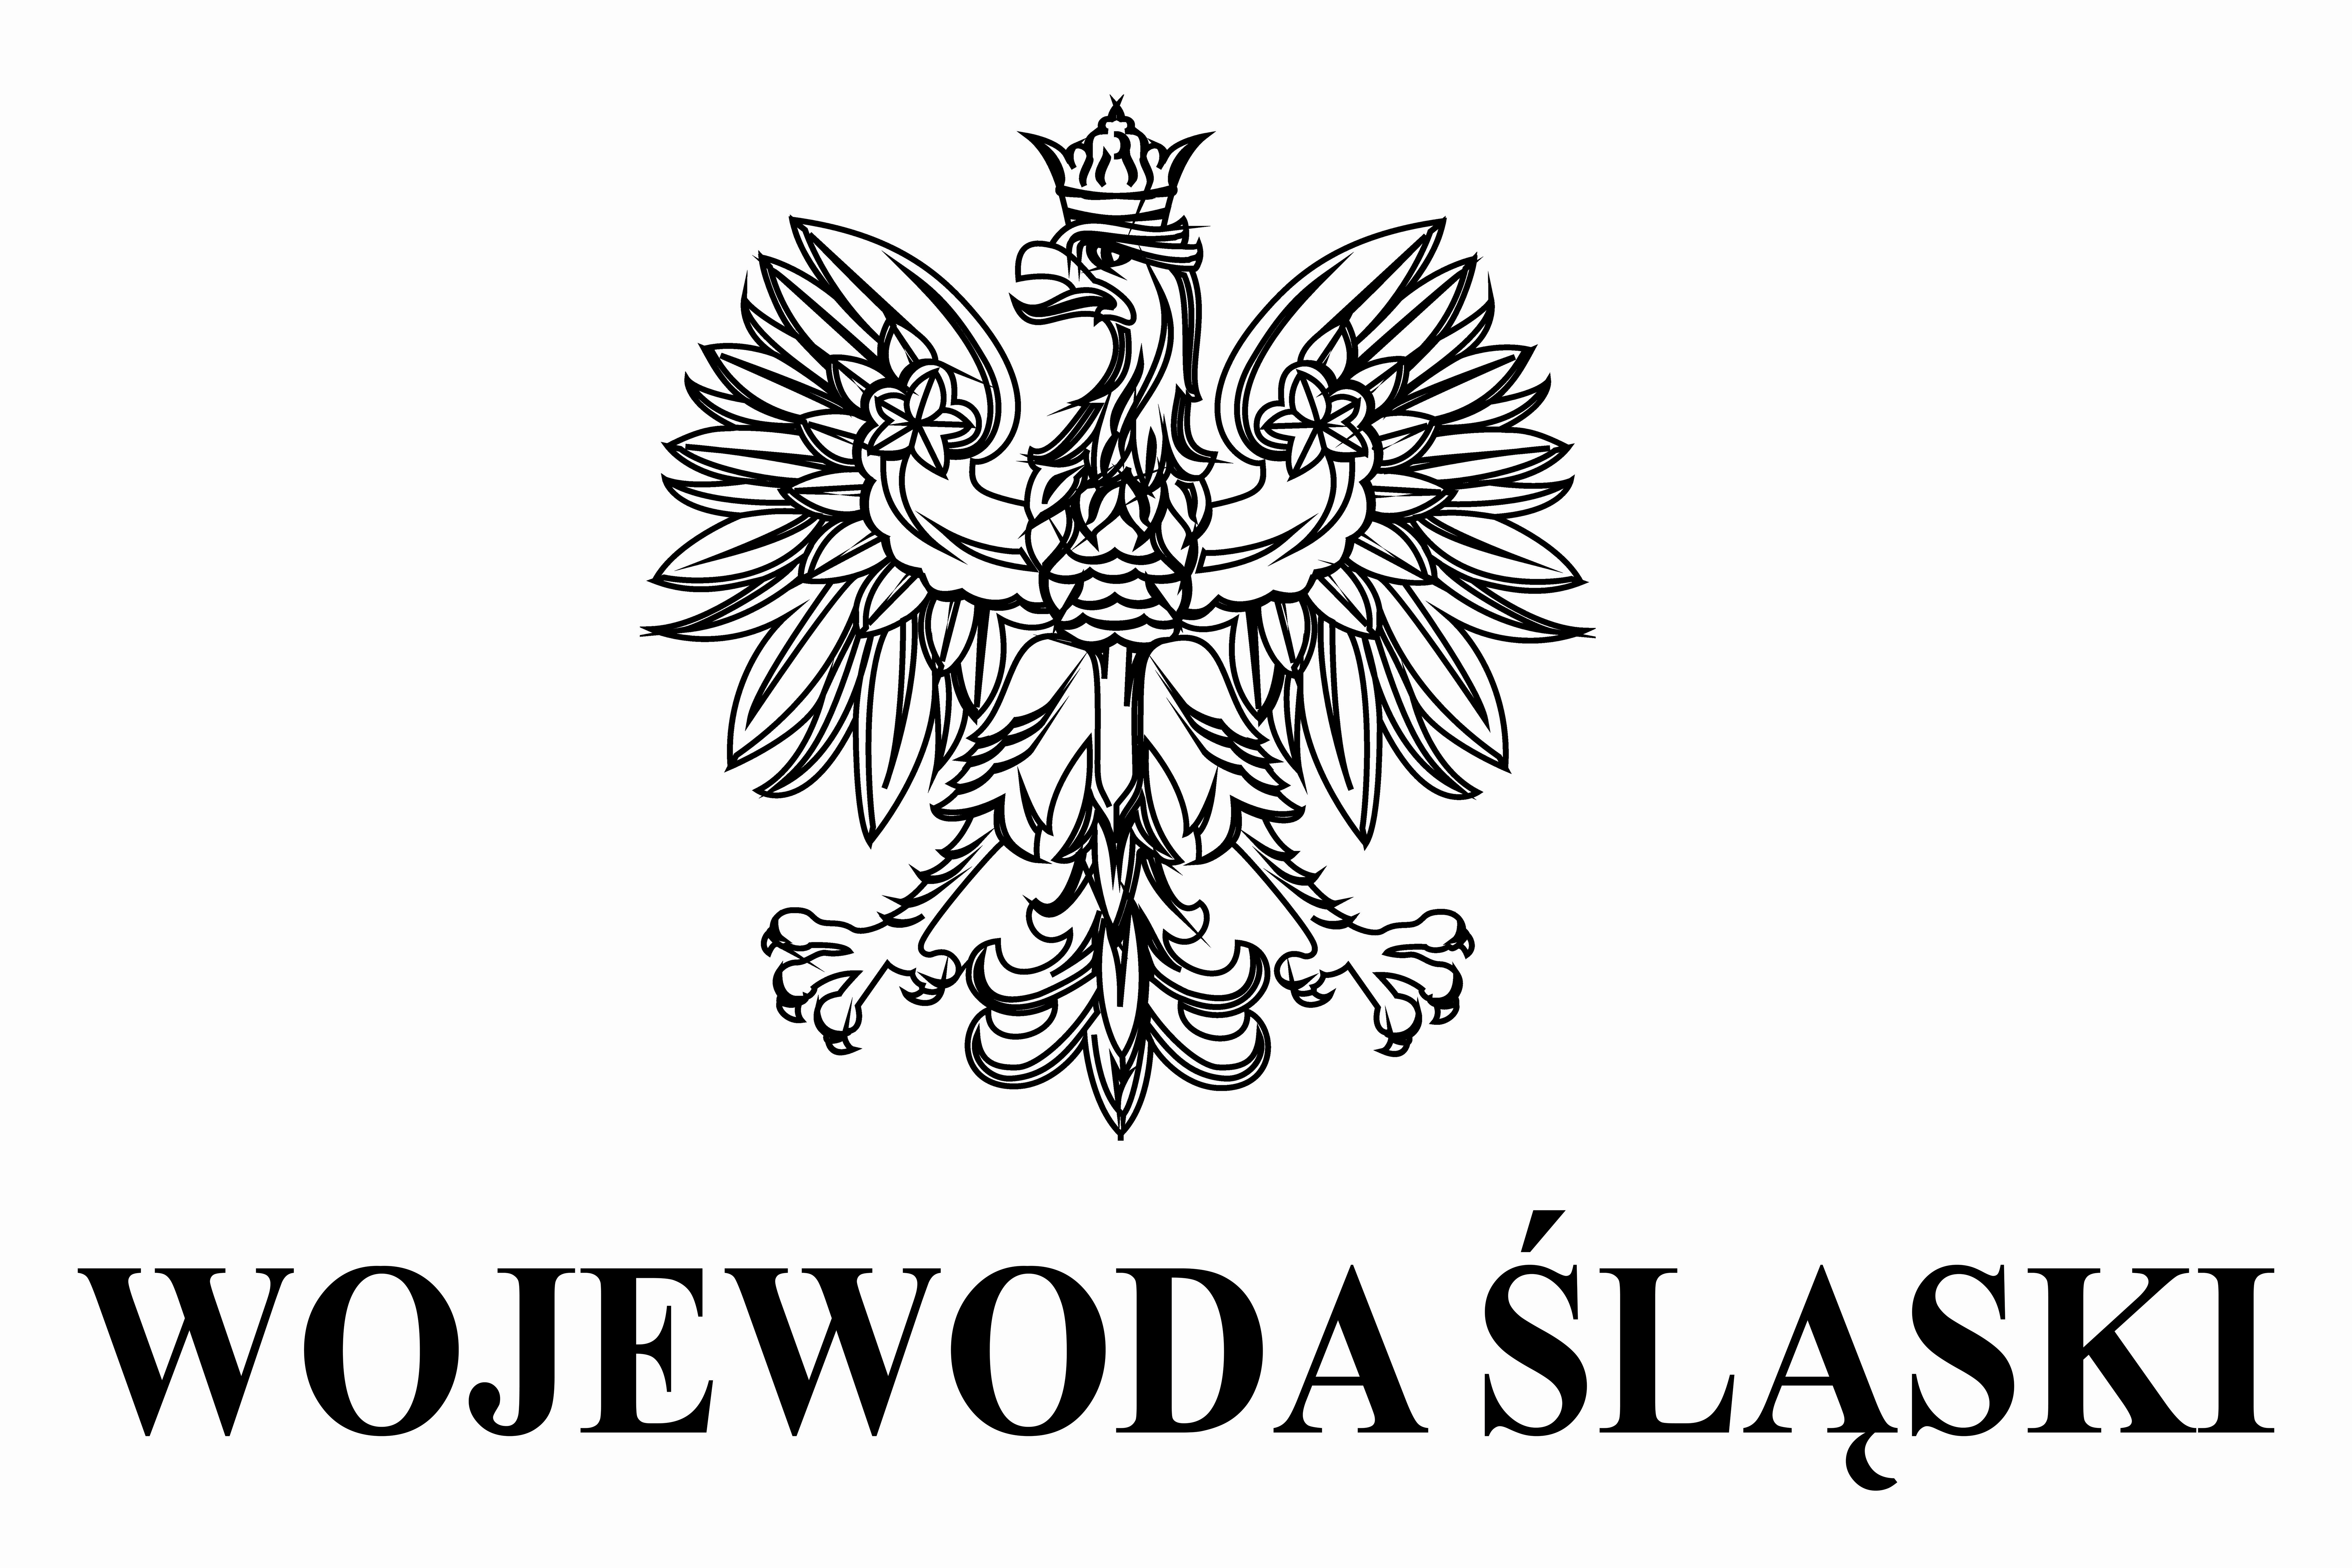 Godło wojewody- czarny kontur orła oraz napis Wojewoda Śląski